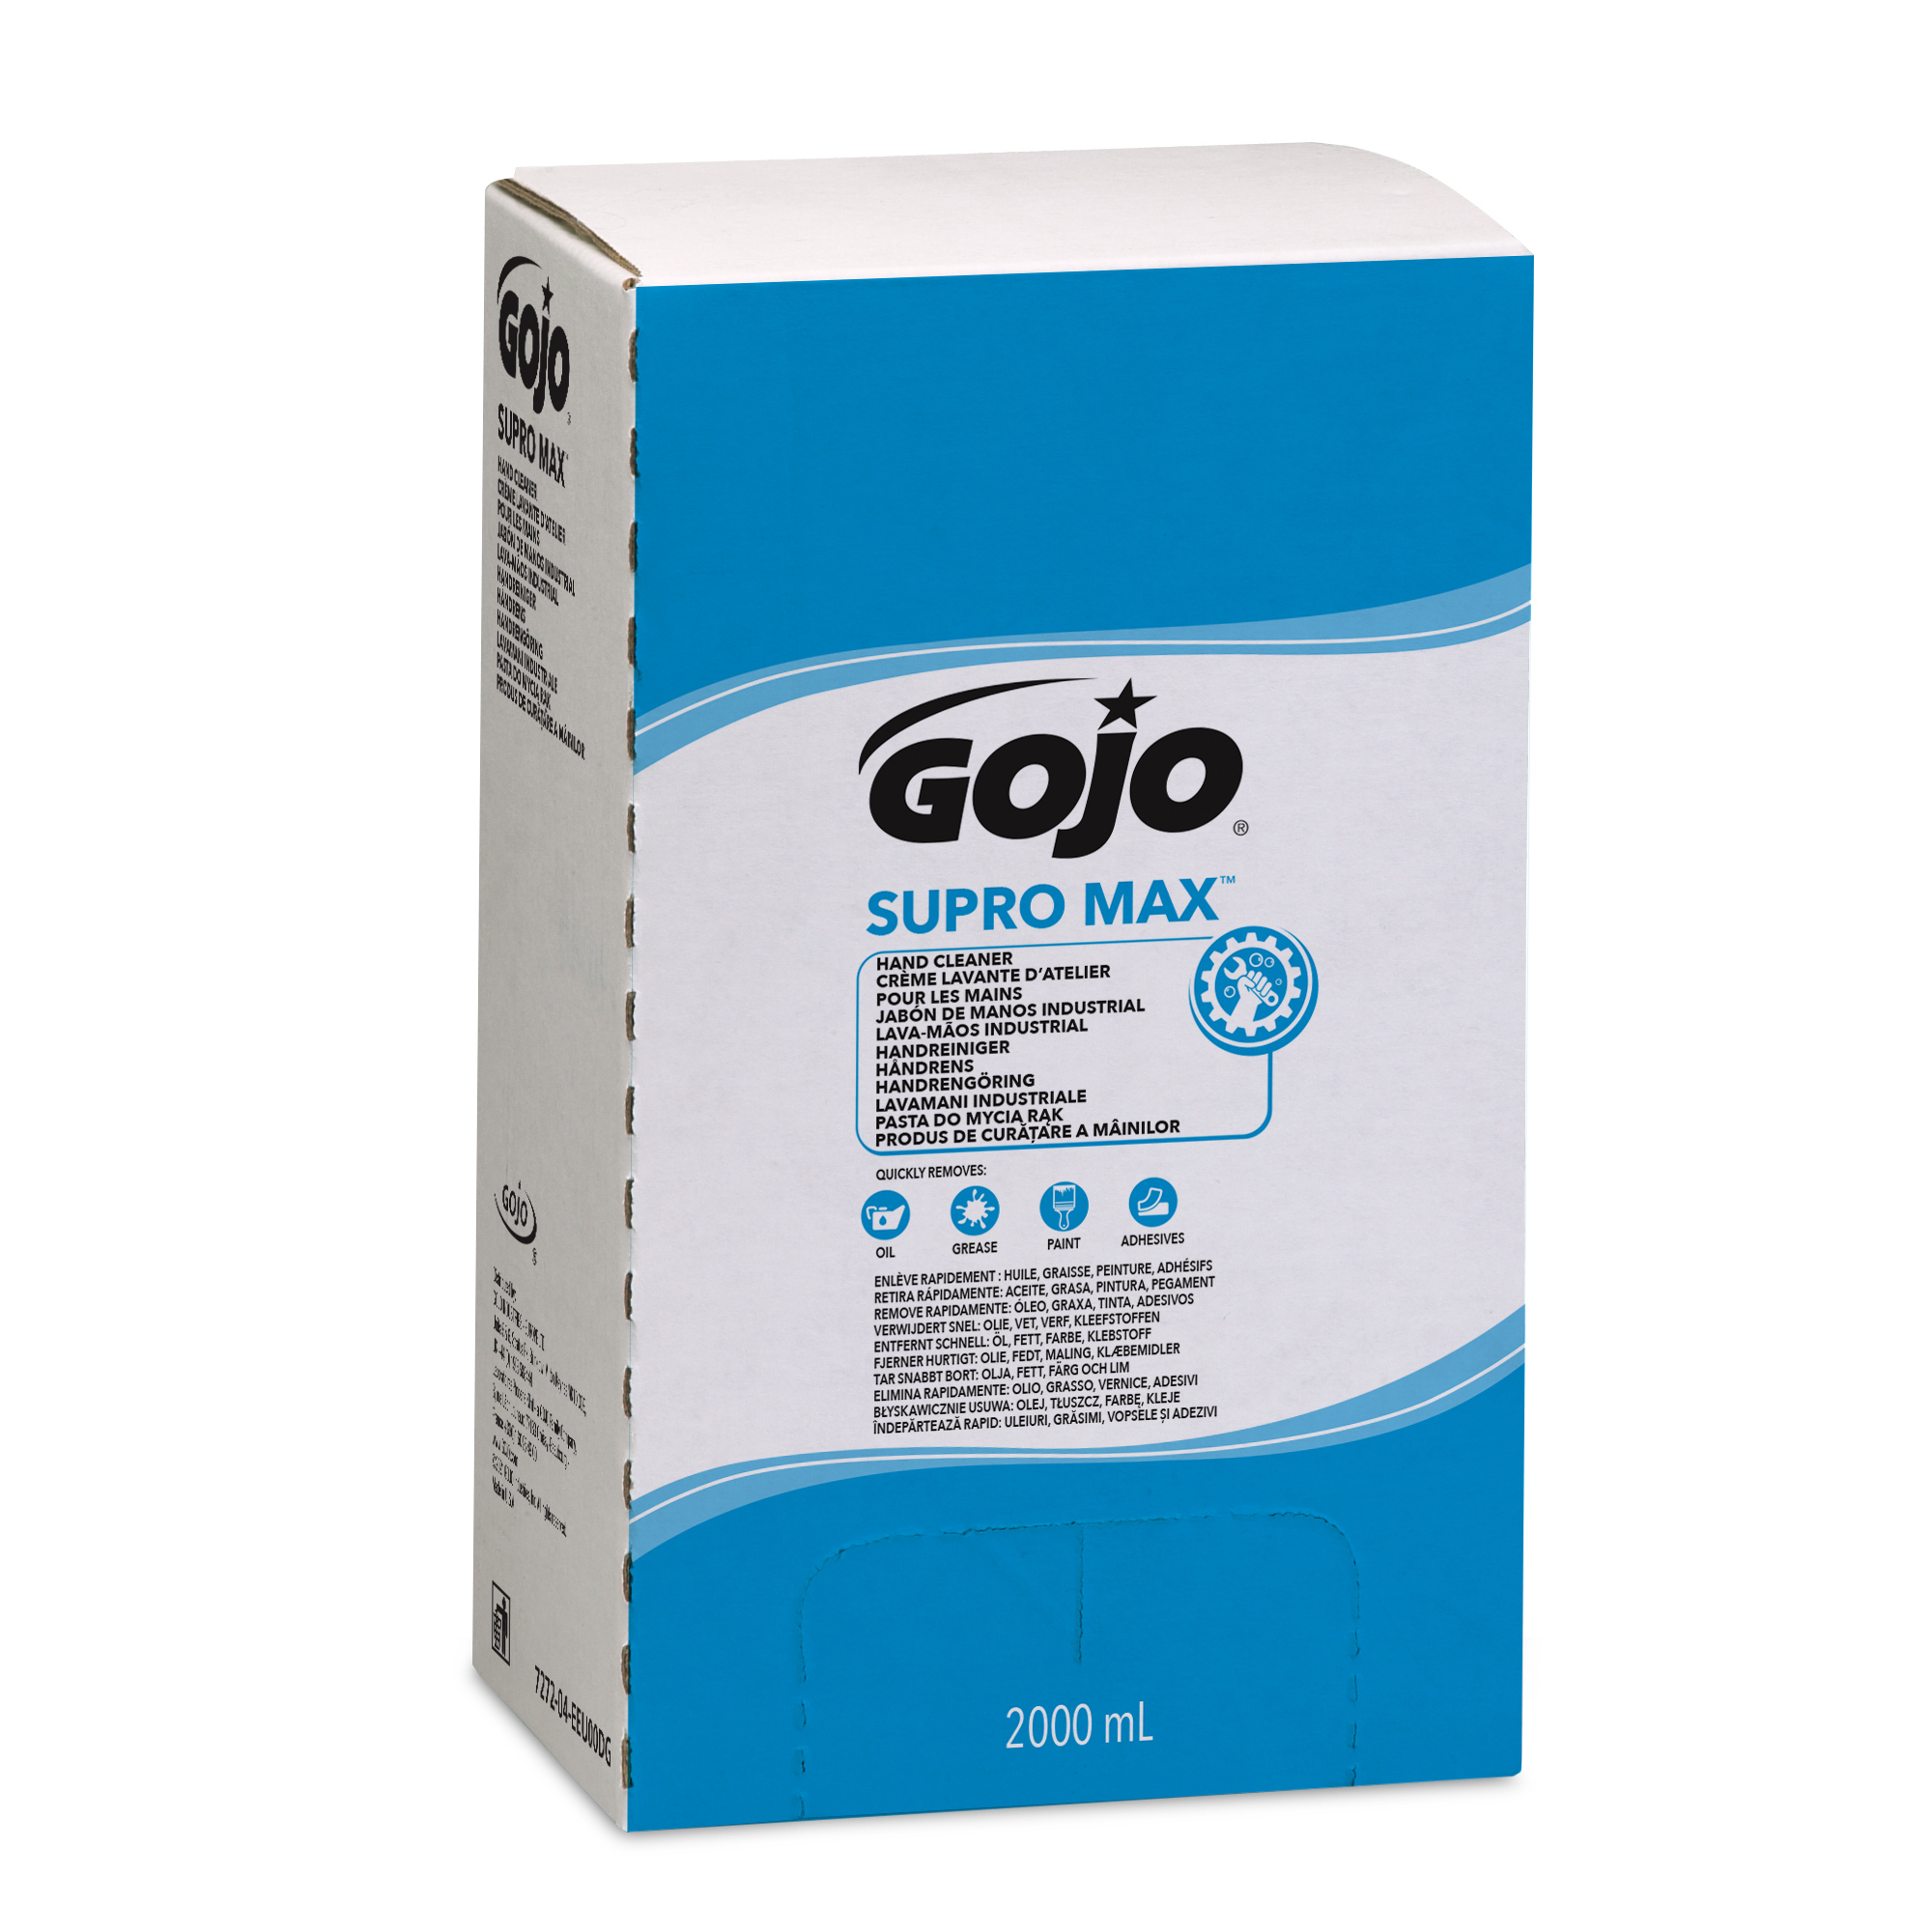 GOJO® Handreiniger SUPRO MAX PRO TDX Kartusche 2000ml